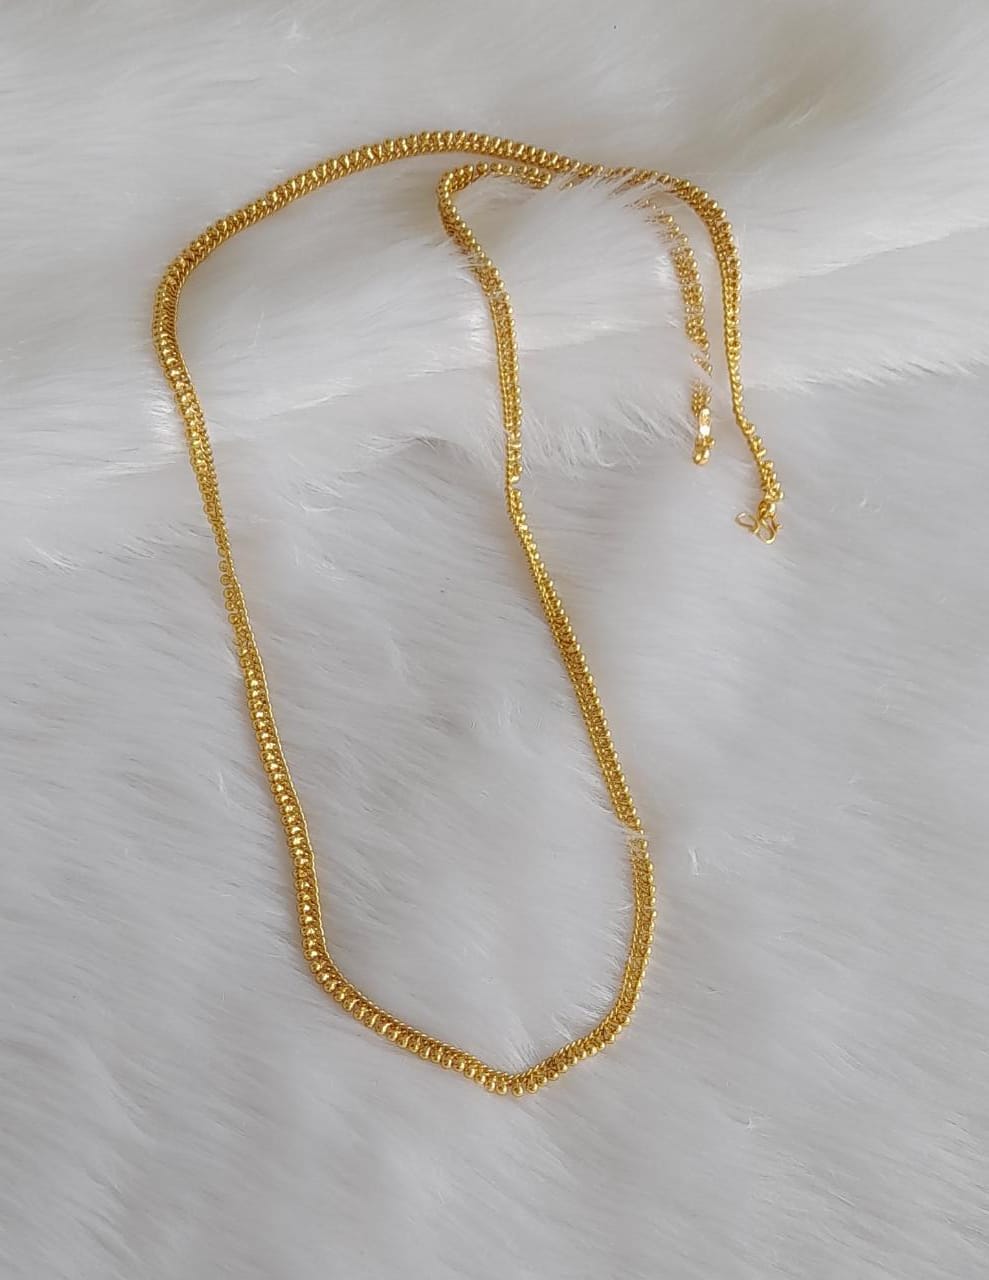 Gold tone 30 inches chain dj-38473